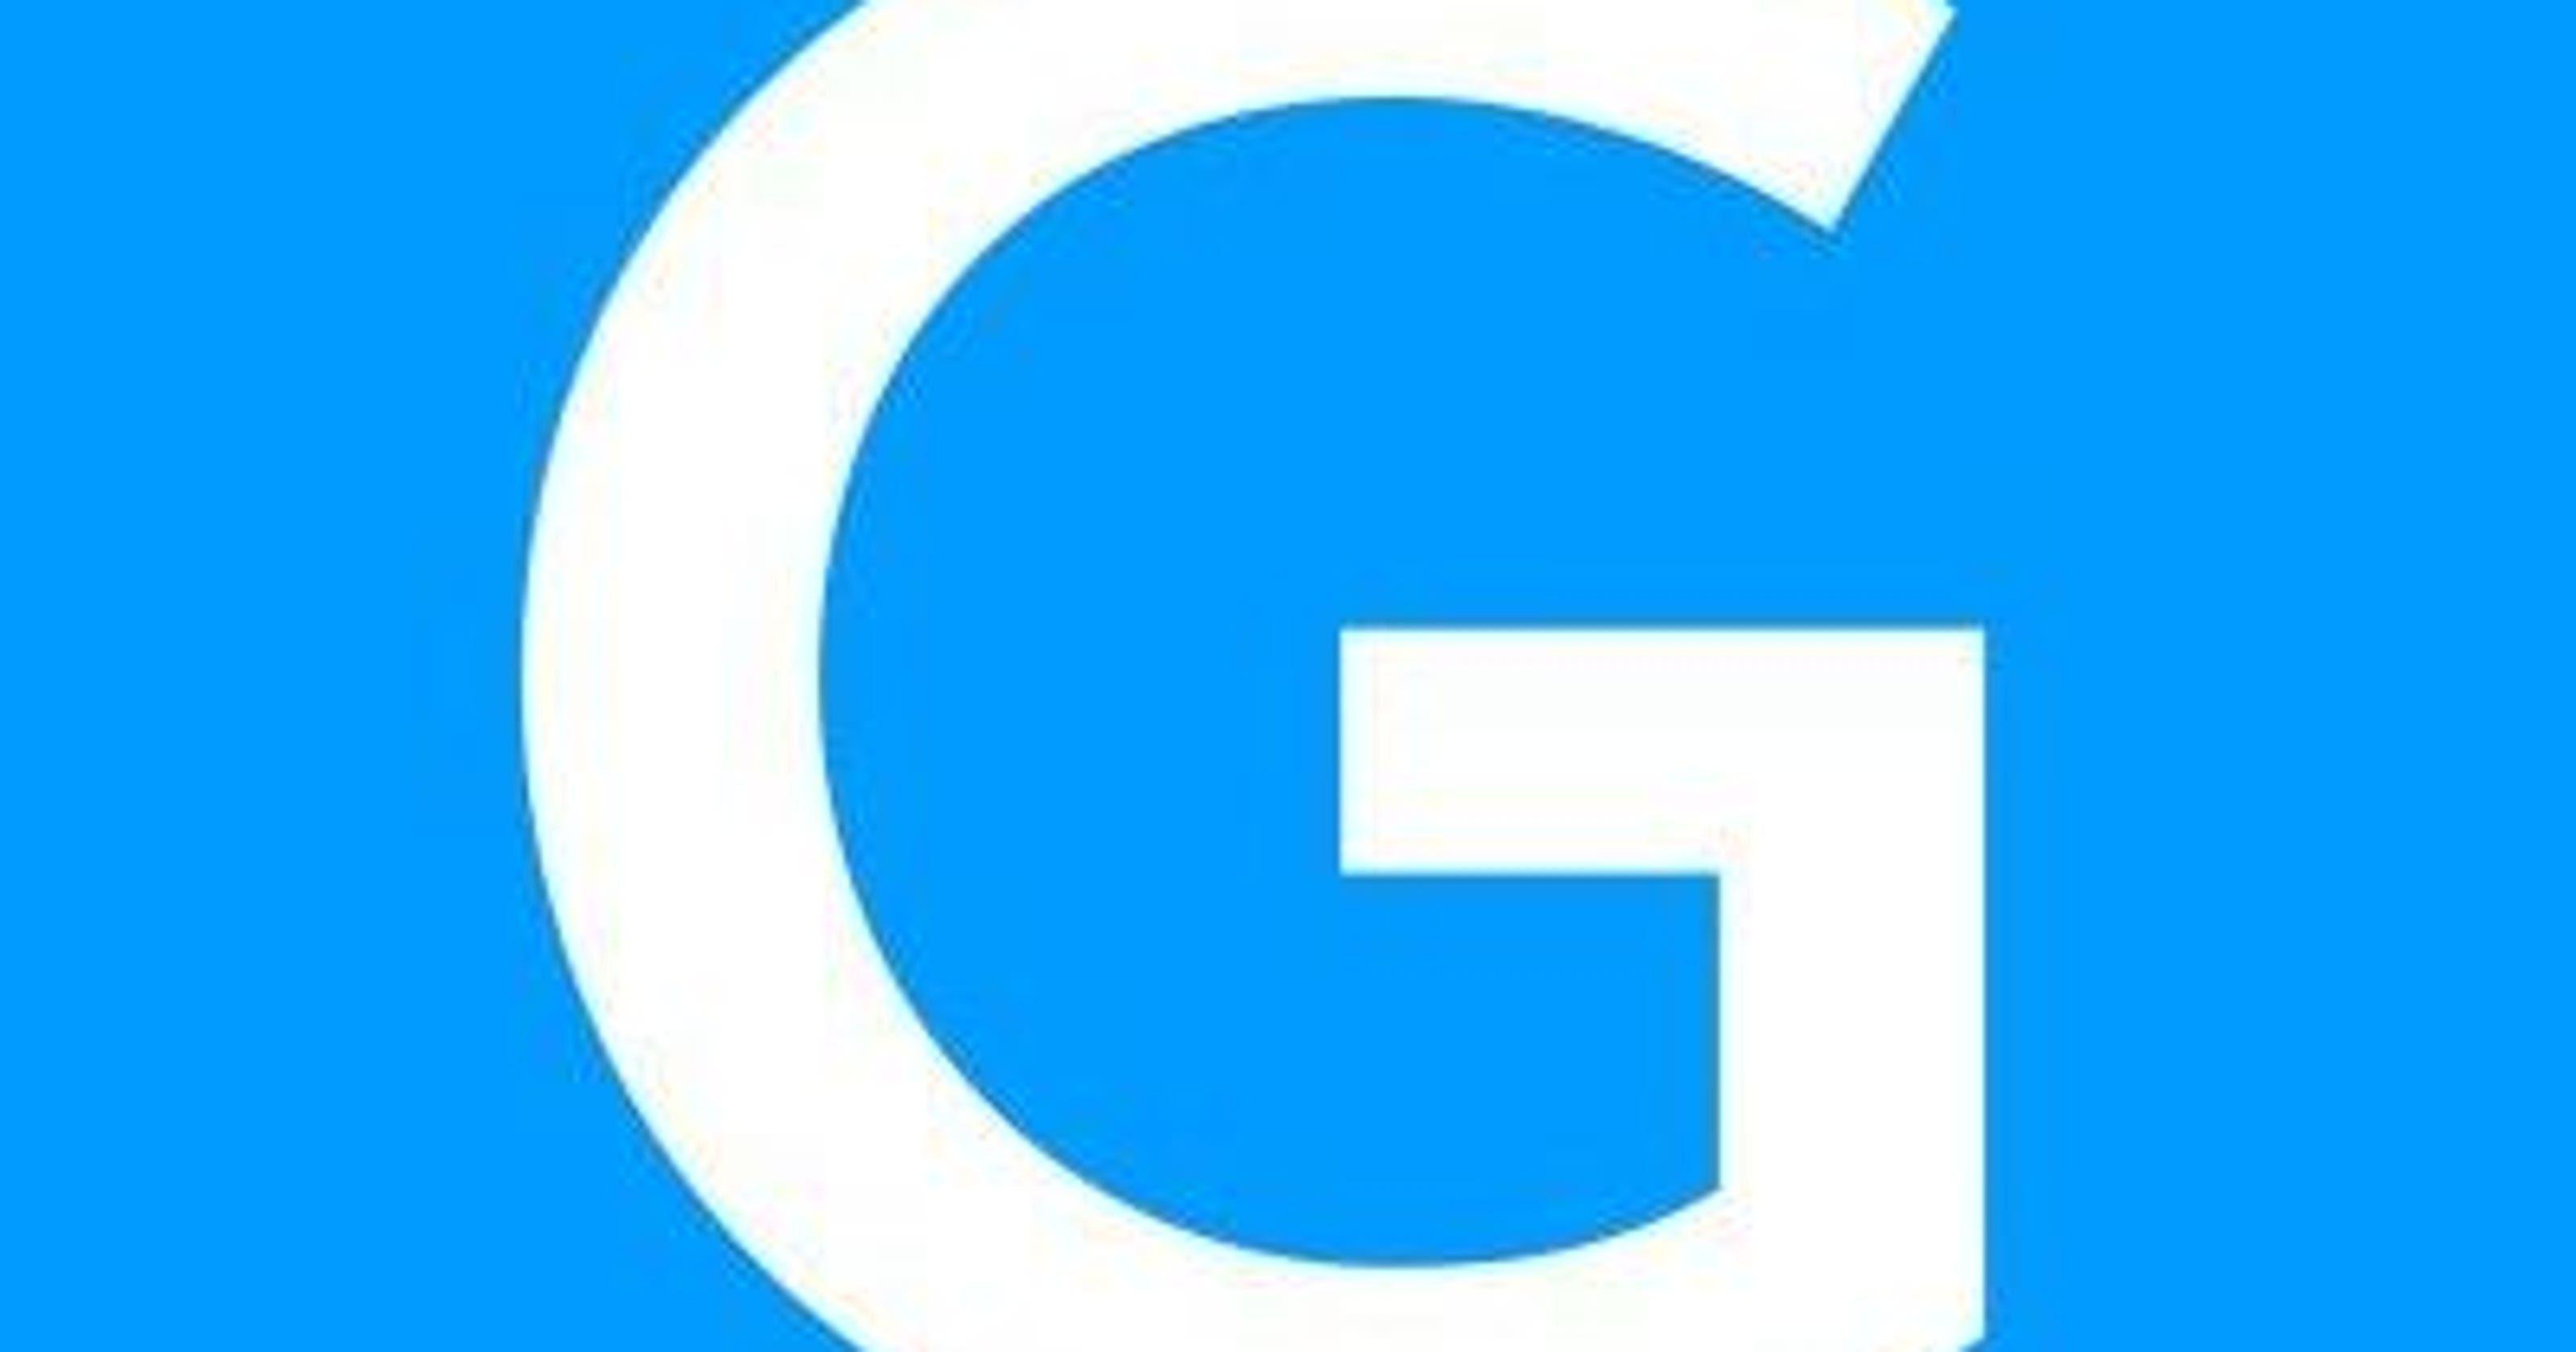 Gannett Logo - A new chapter: Introducing new Gannett